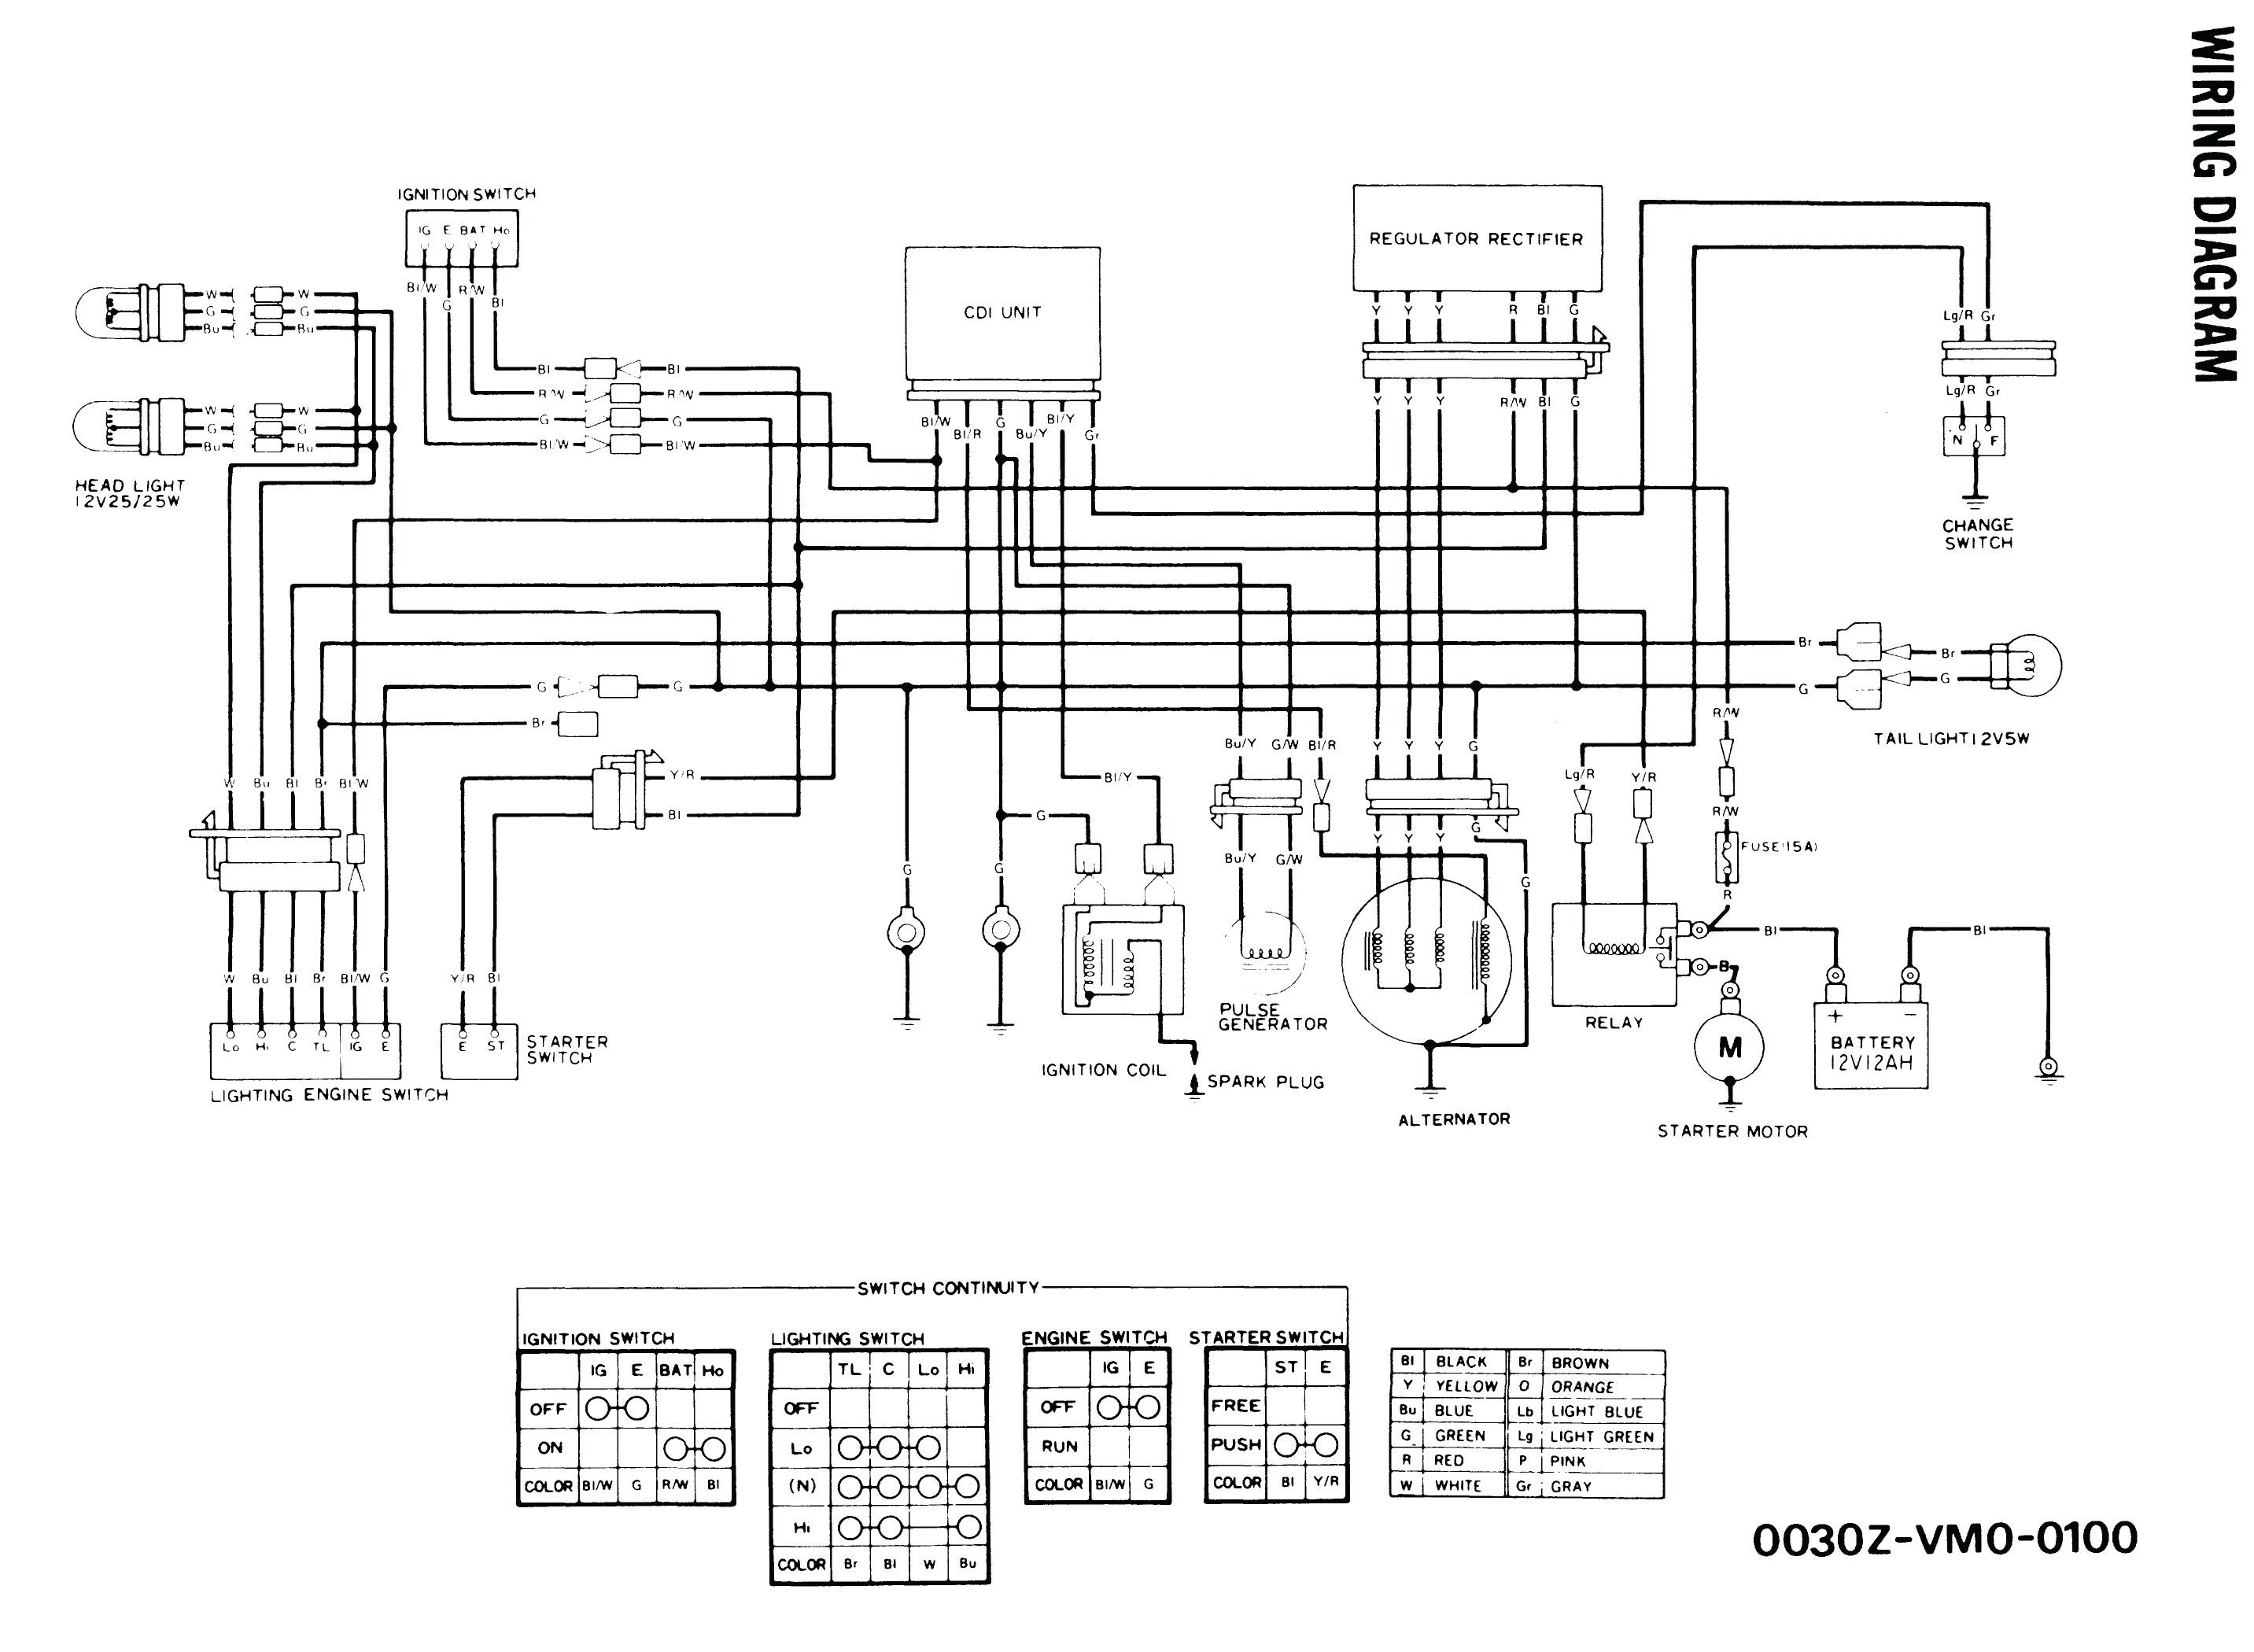 48 Volt Club Car Wiring Diagram - General Wiring Diagram